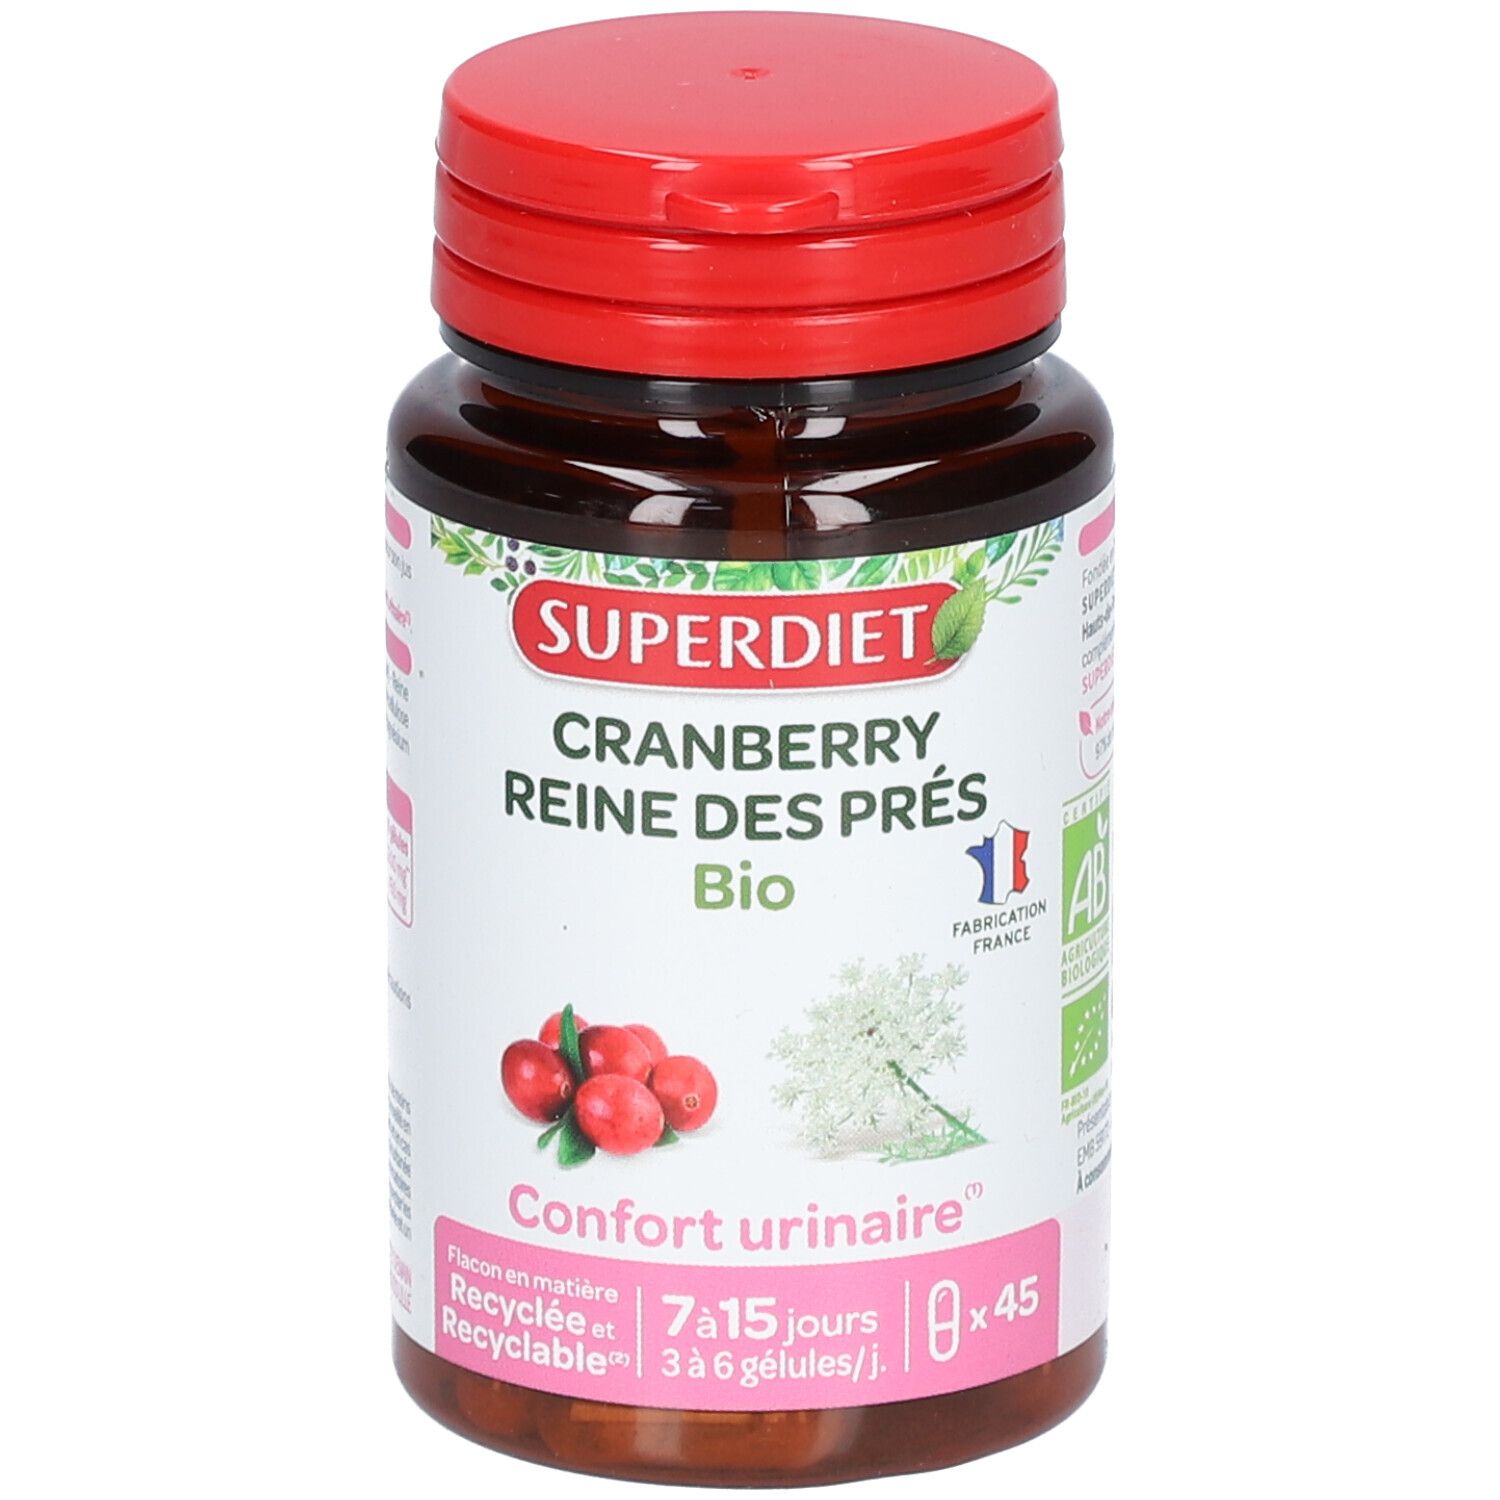 Super Diet Cranberry Reine des Prés Bio